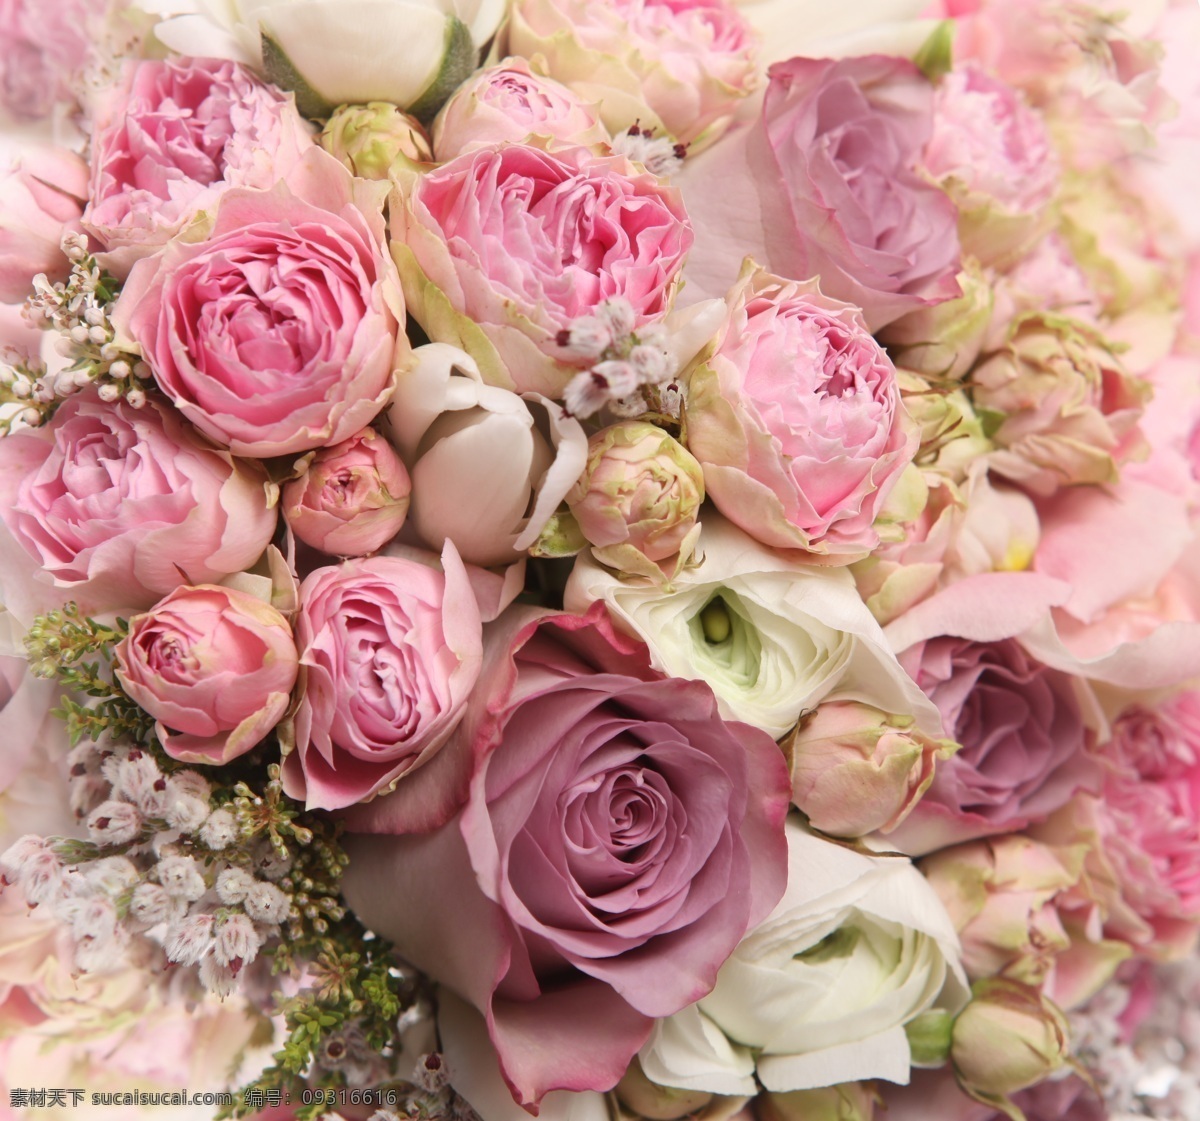 玫瑰 鲜花 鲜艳 粉色 花朵 花蕊 浪漫 背景 壁纸 花瓣 花草 生物世界